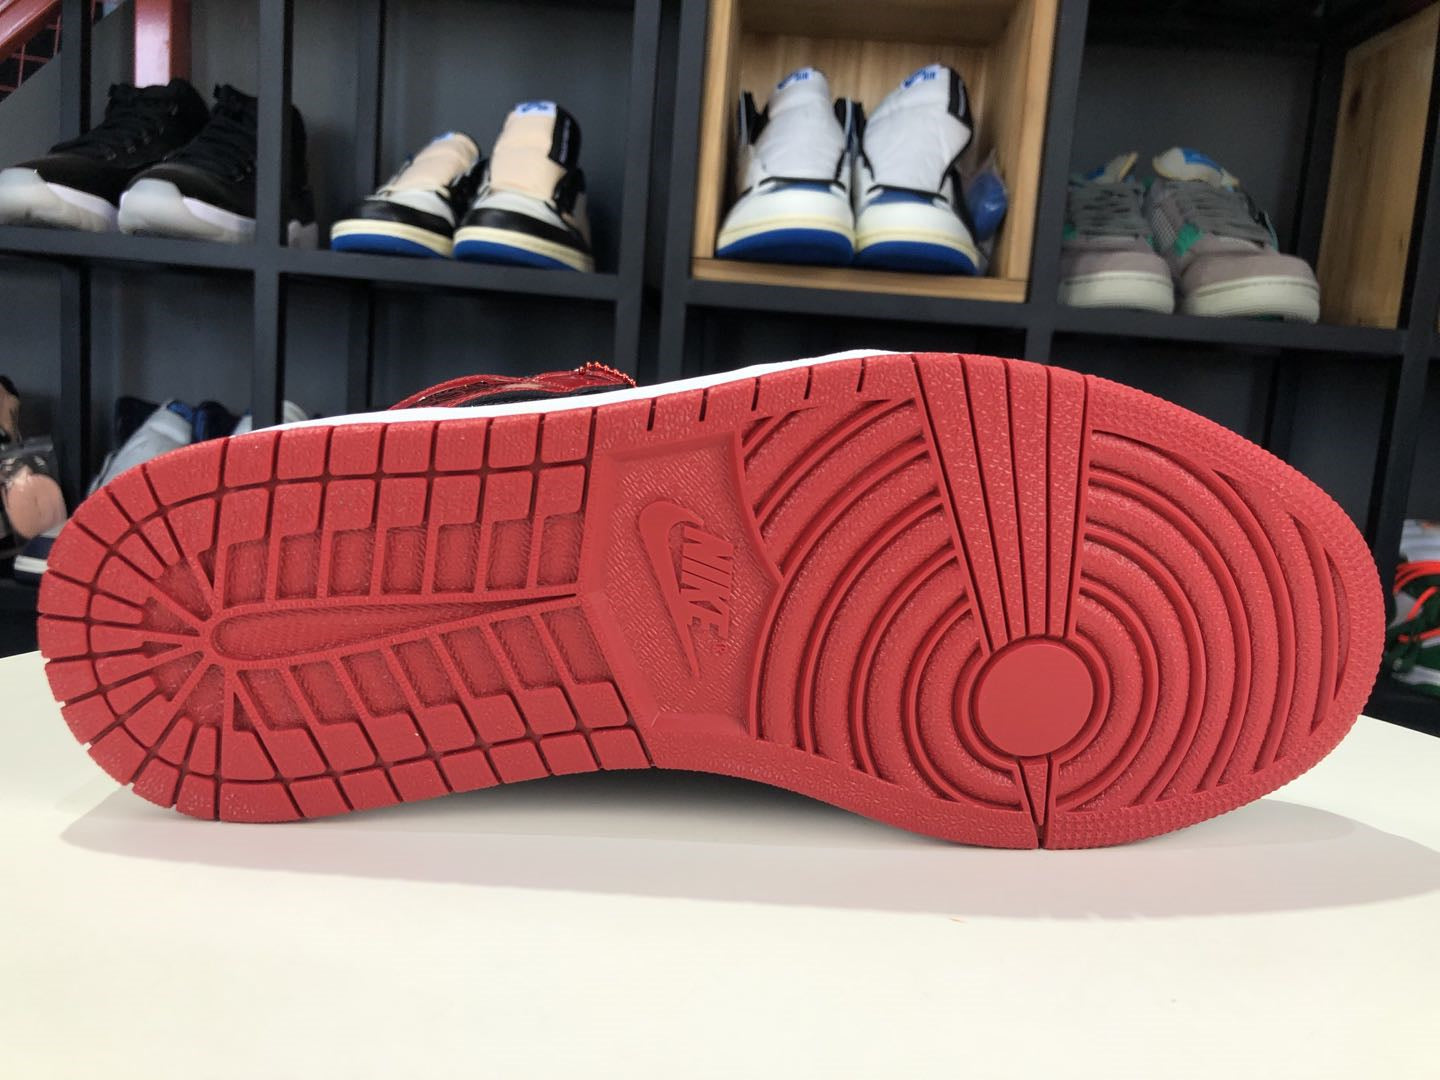 NIKE x AIR JORDAN - Nike Air Jordan 1 Retro High OG Patent Bred Sneakers